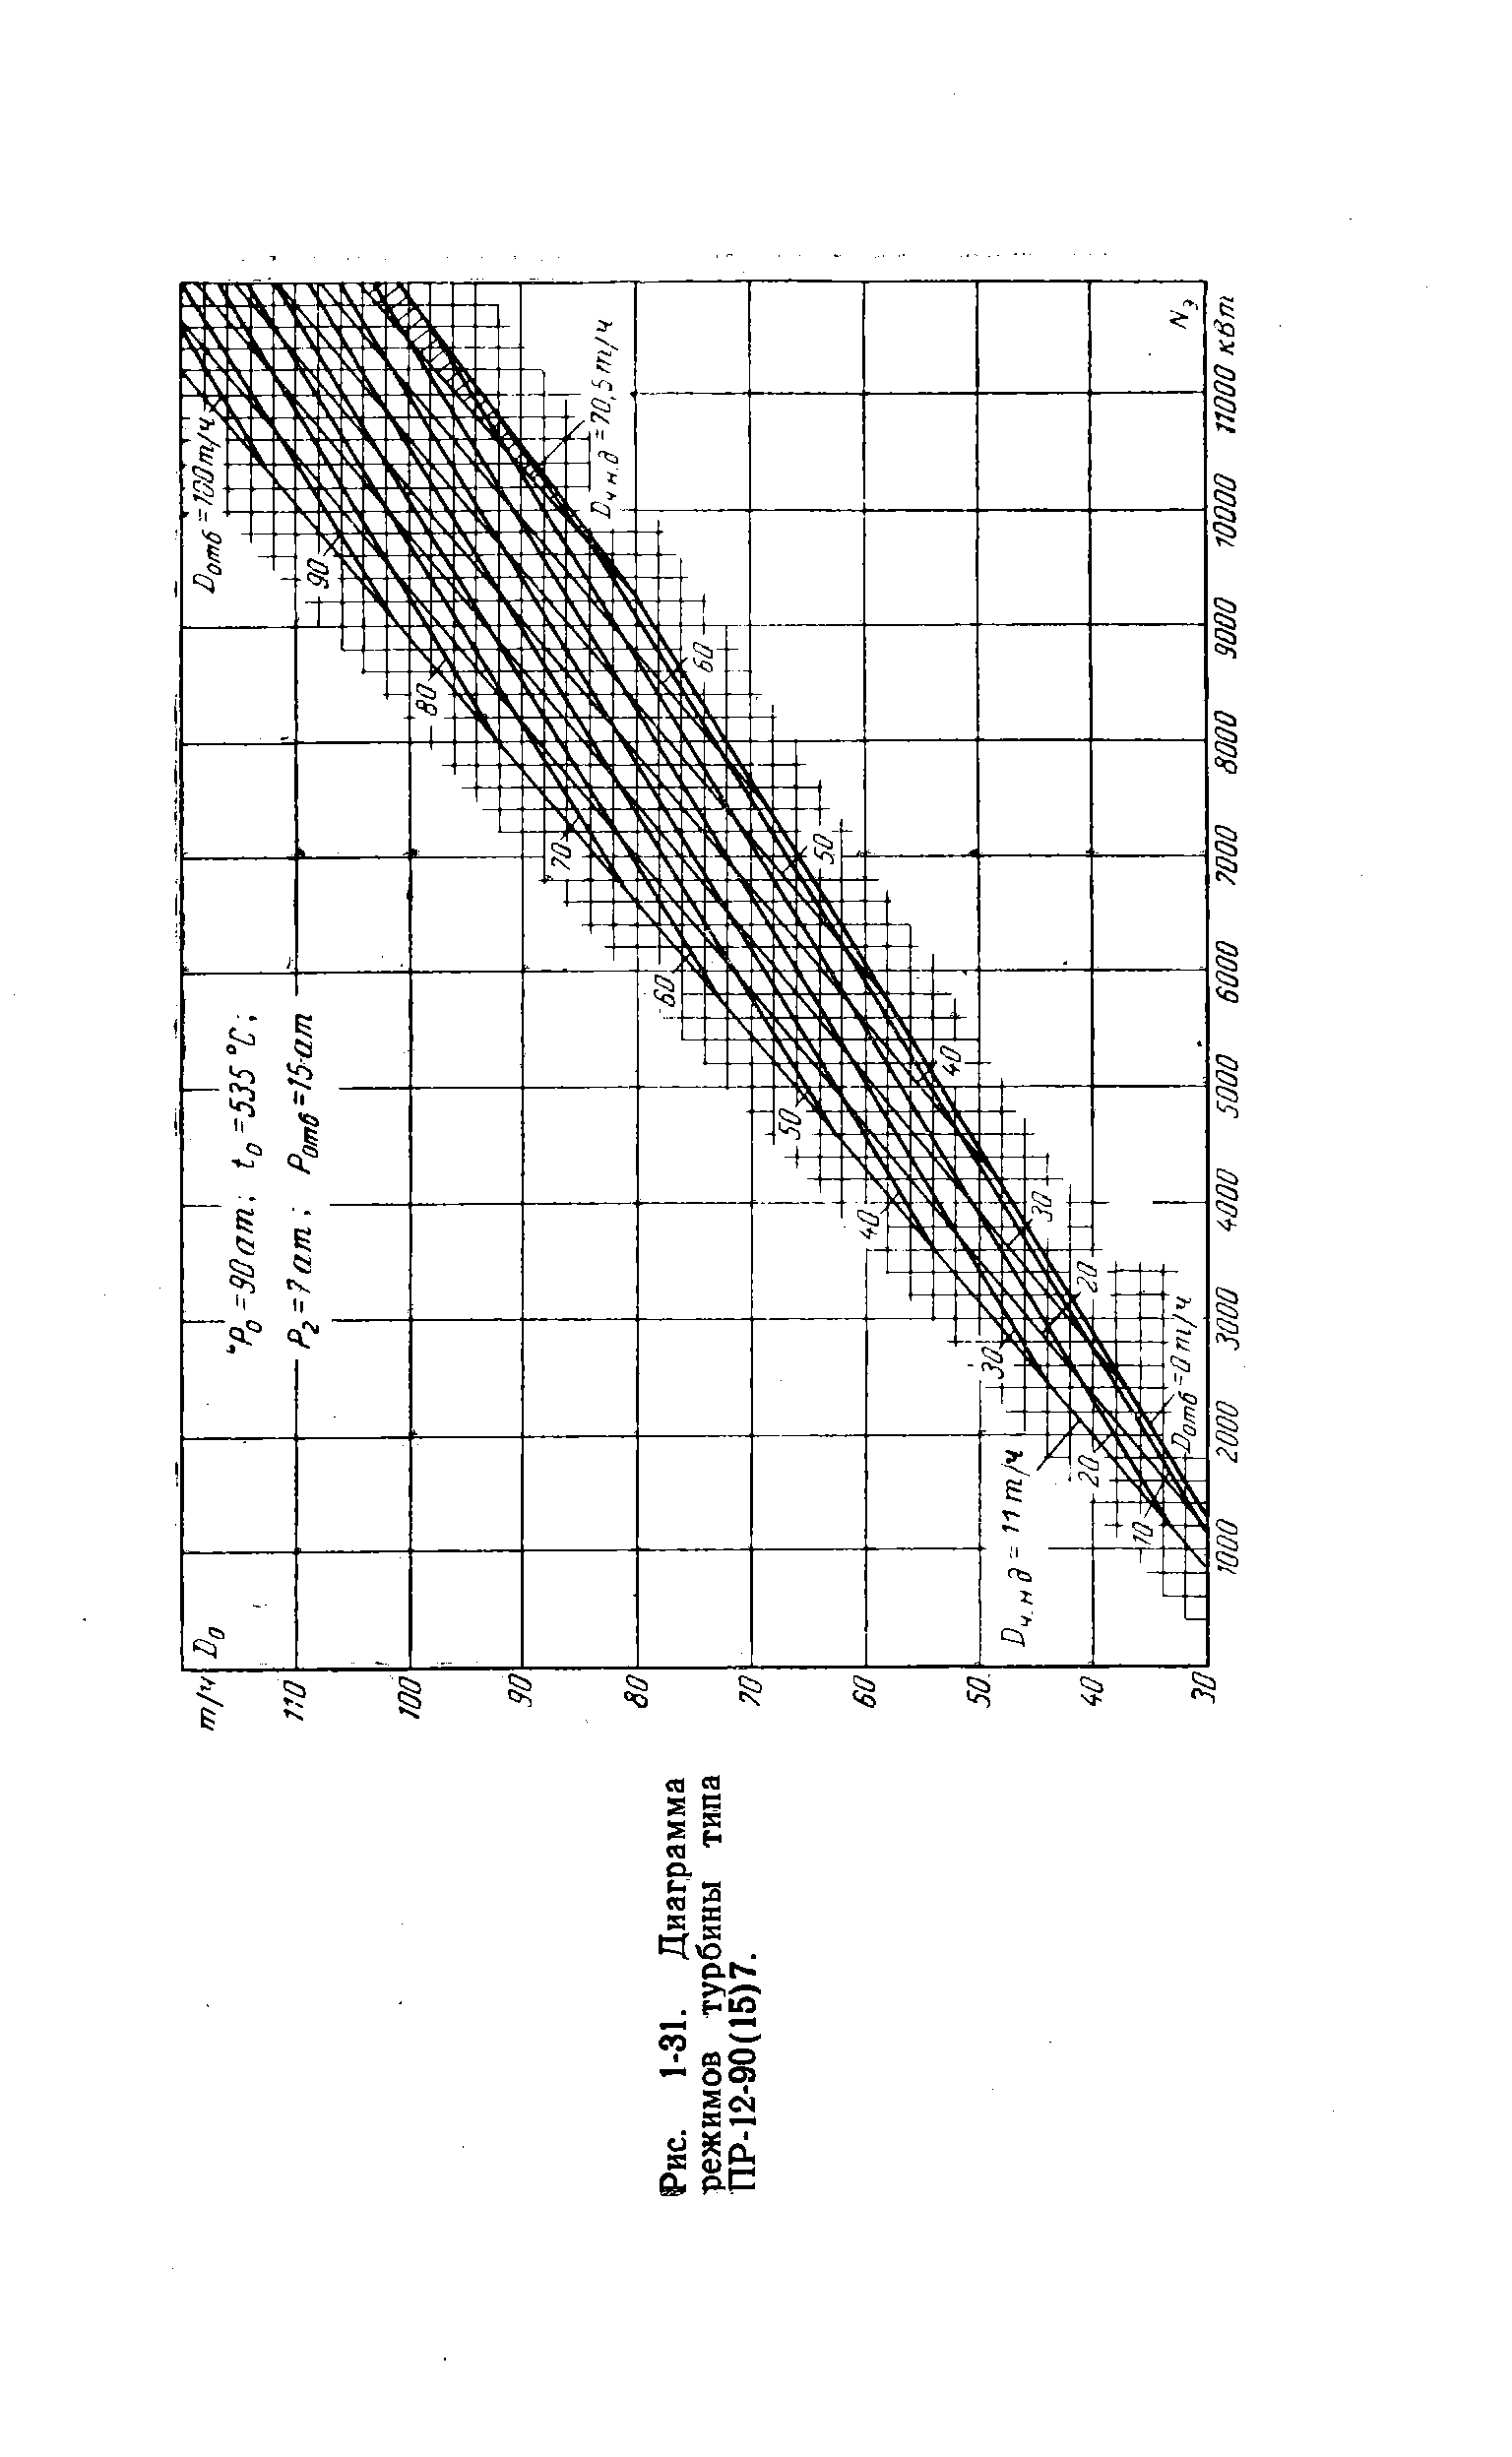 Рис. 1-31. Диаграмма режимов турбины типа ПР-12-90(15)7.
